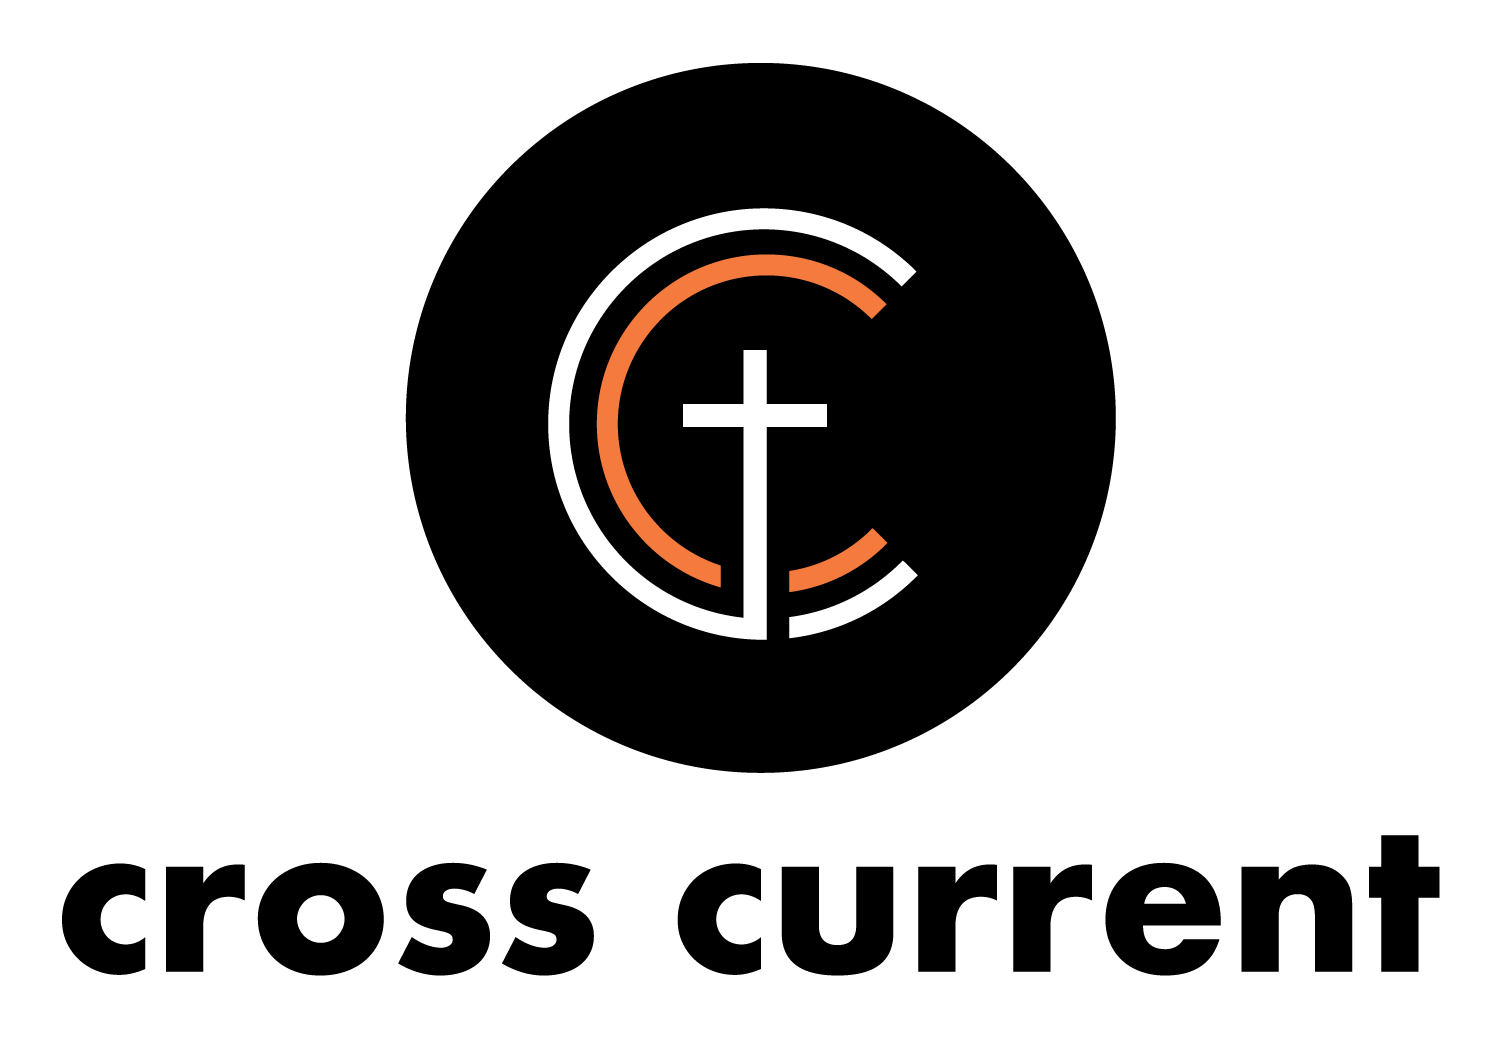 cross-current-logos-circle-black-orange image